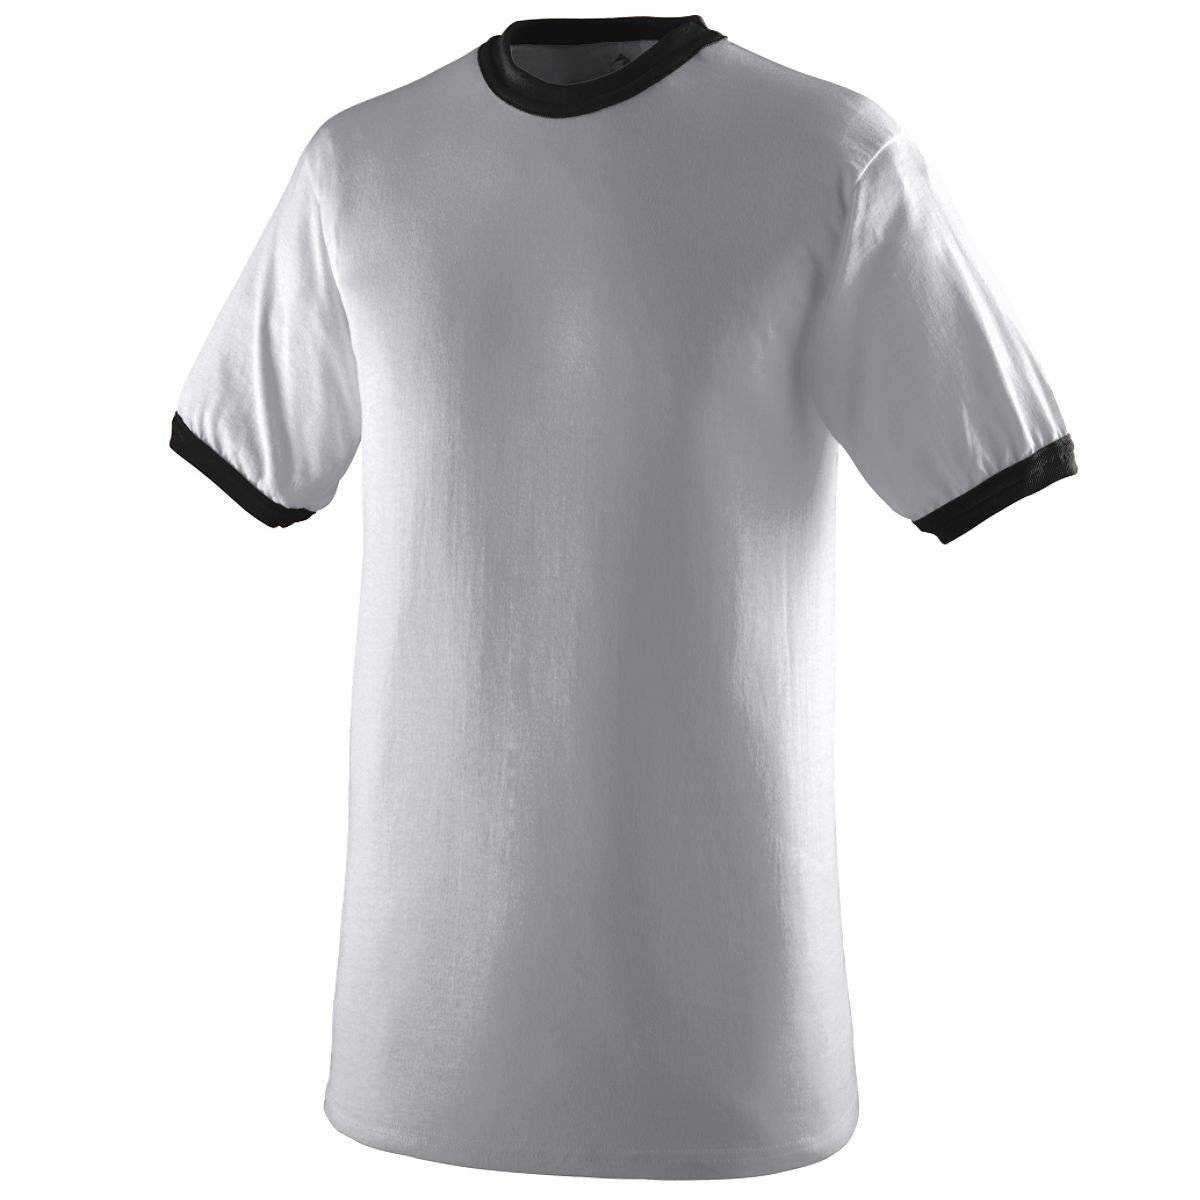 Augusta 710 Ringer T-Shirt - Light Gray Black - HIT a Double